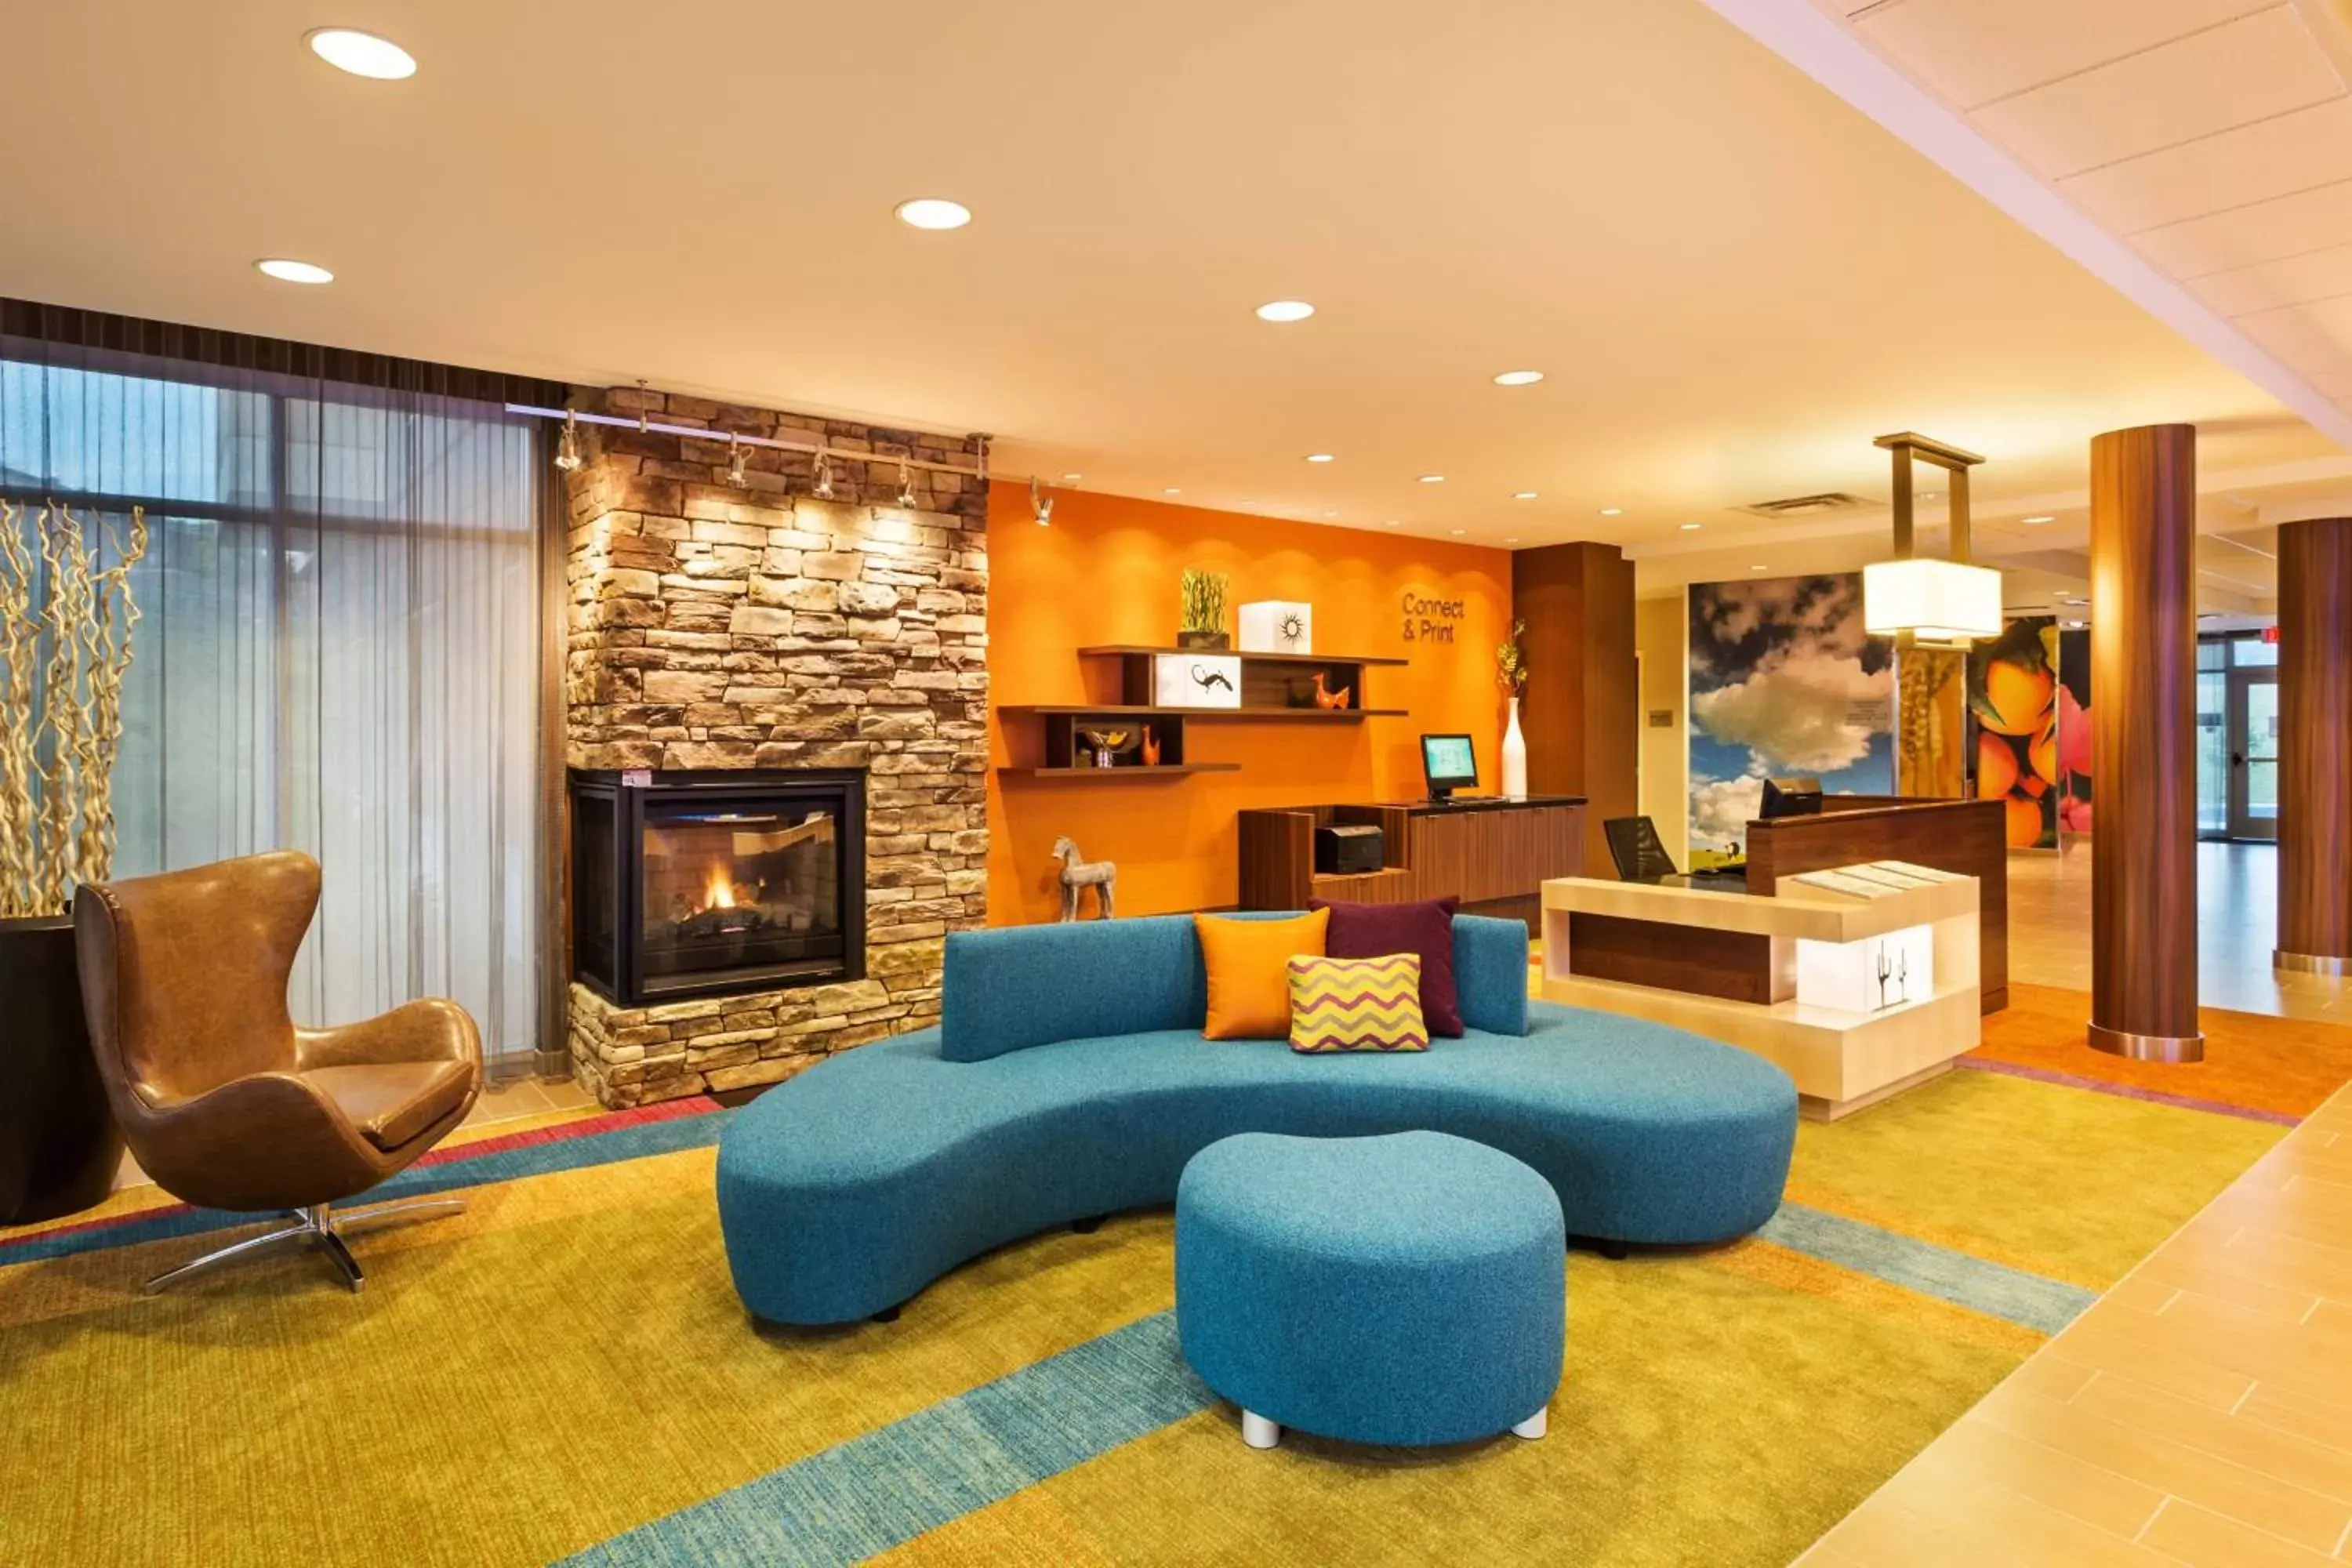 Lobby or reception in Fairfield Inn & Suites by Marriott Johnson City